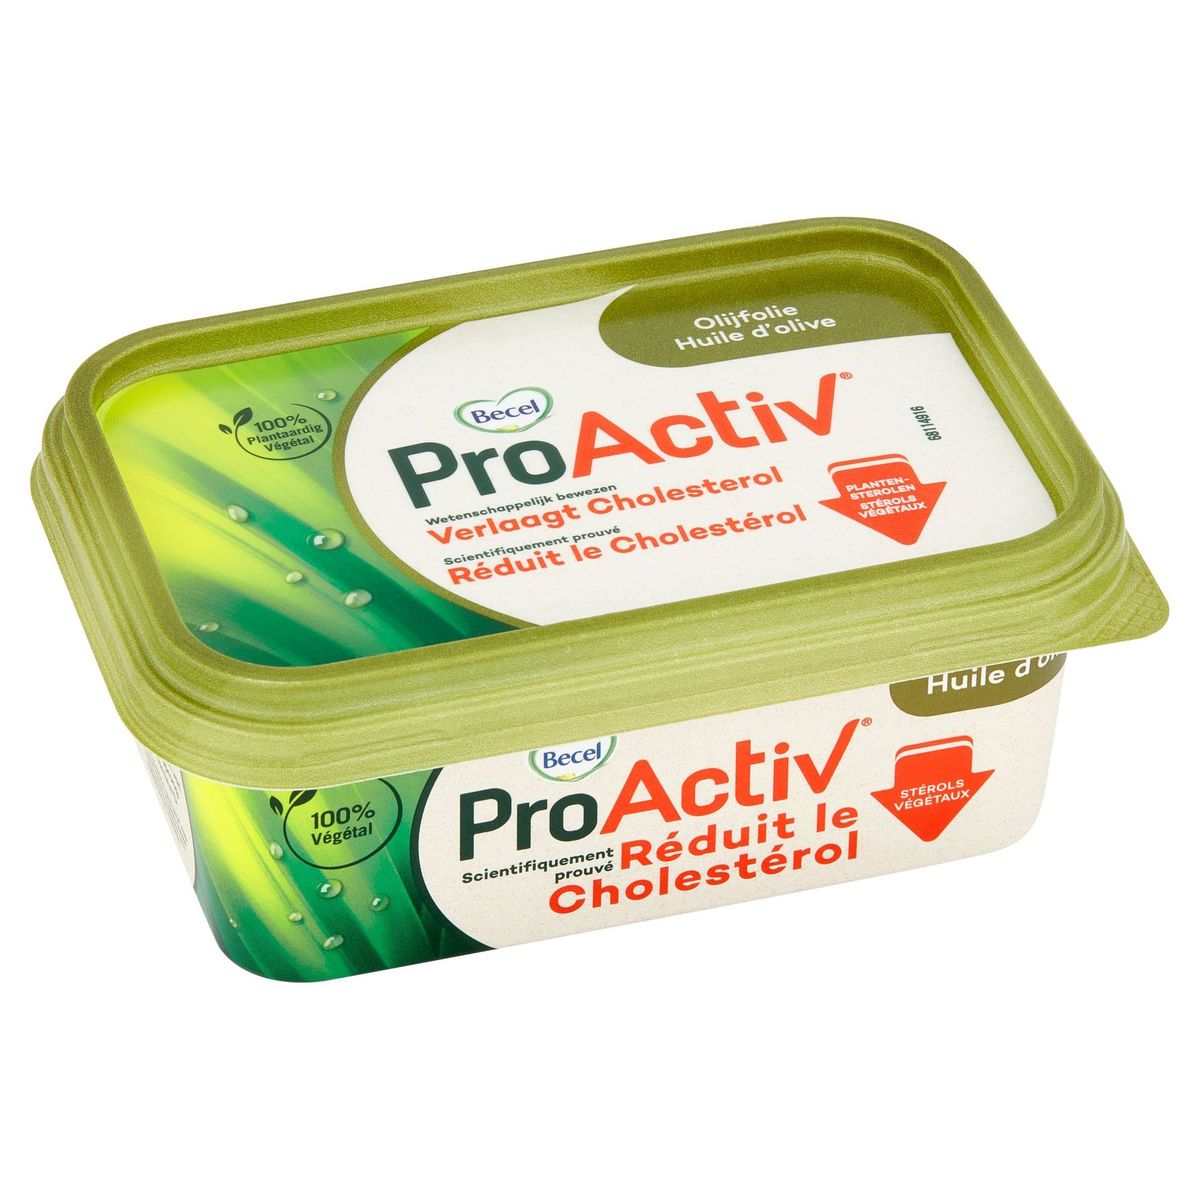 ProActiv | Verlaagt cholesterol | met Olijfolie | 250g